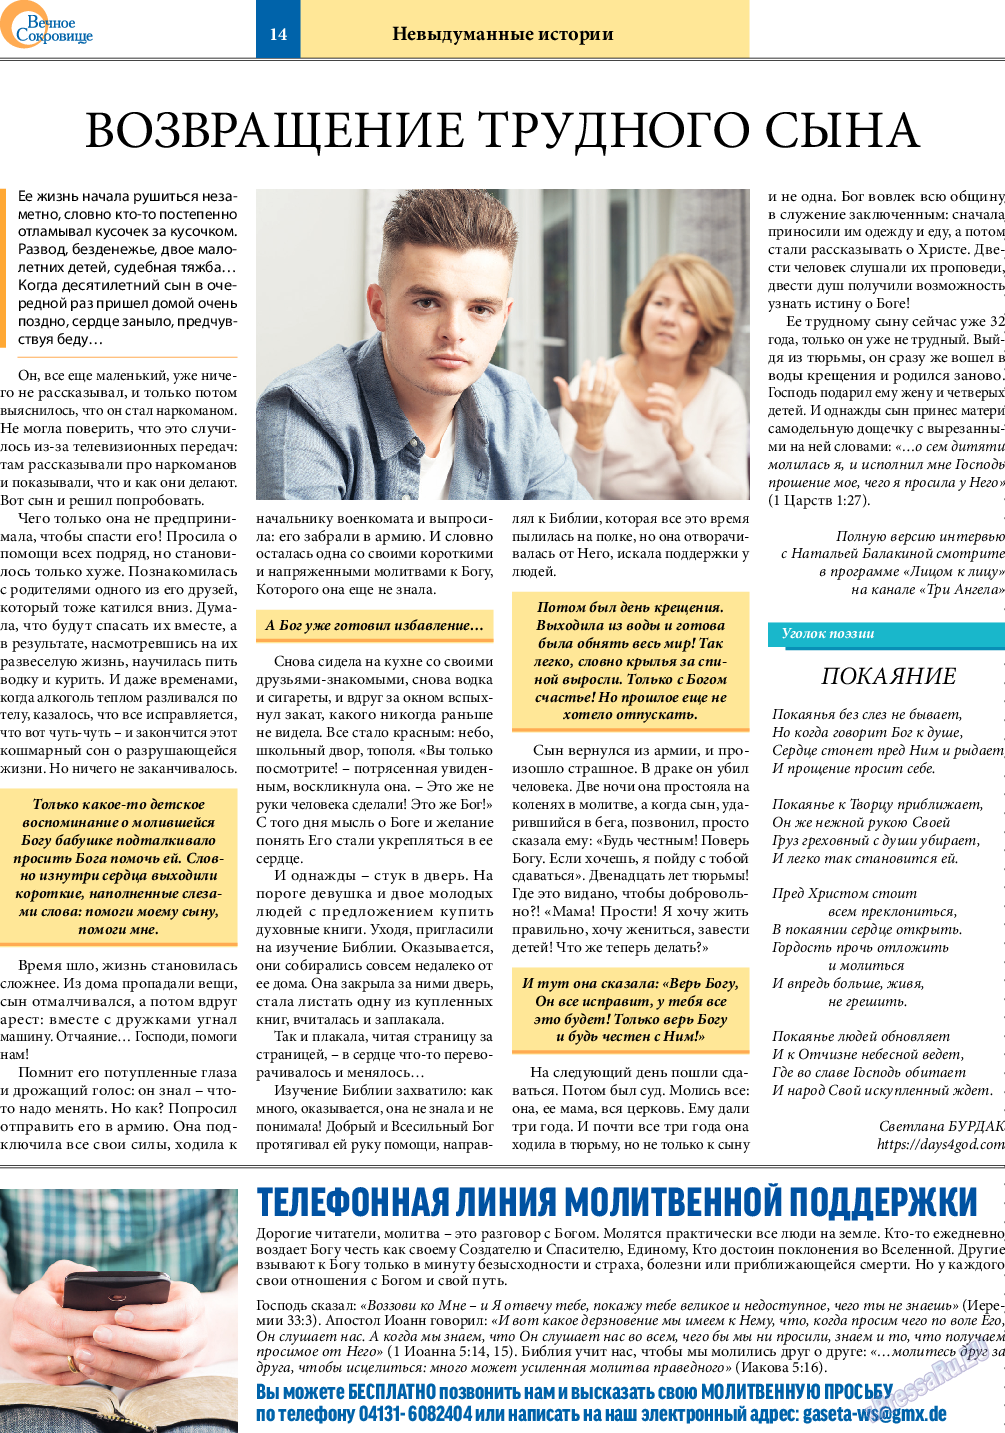 Вечное сокровище (газета). 2022 год, номер 1, стр. 14